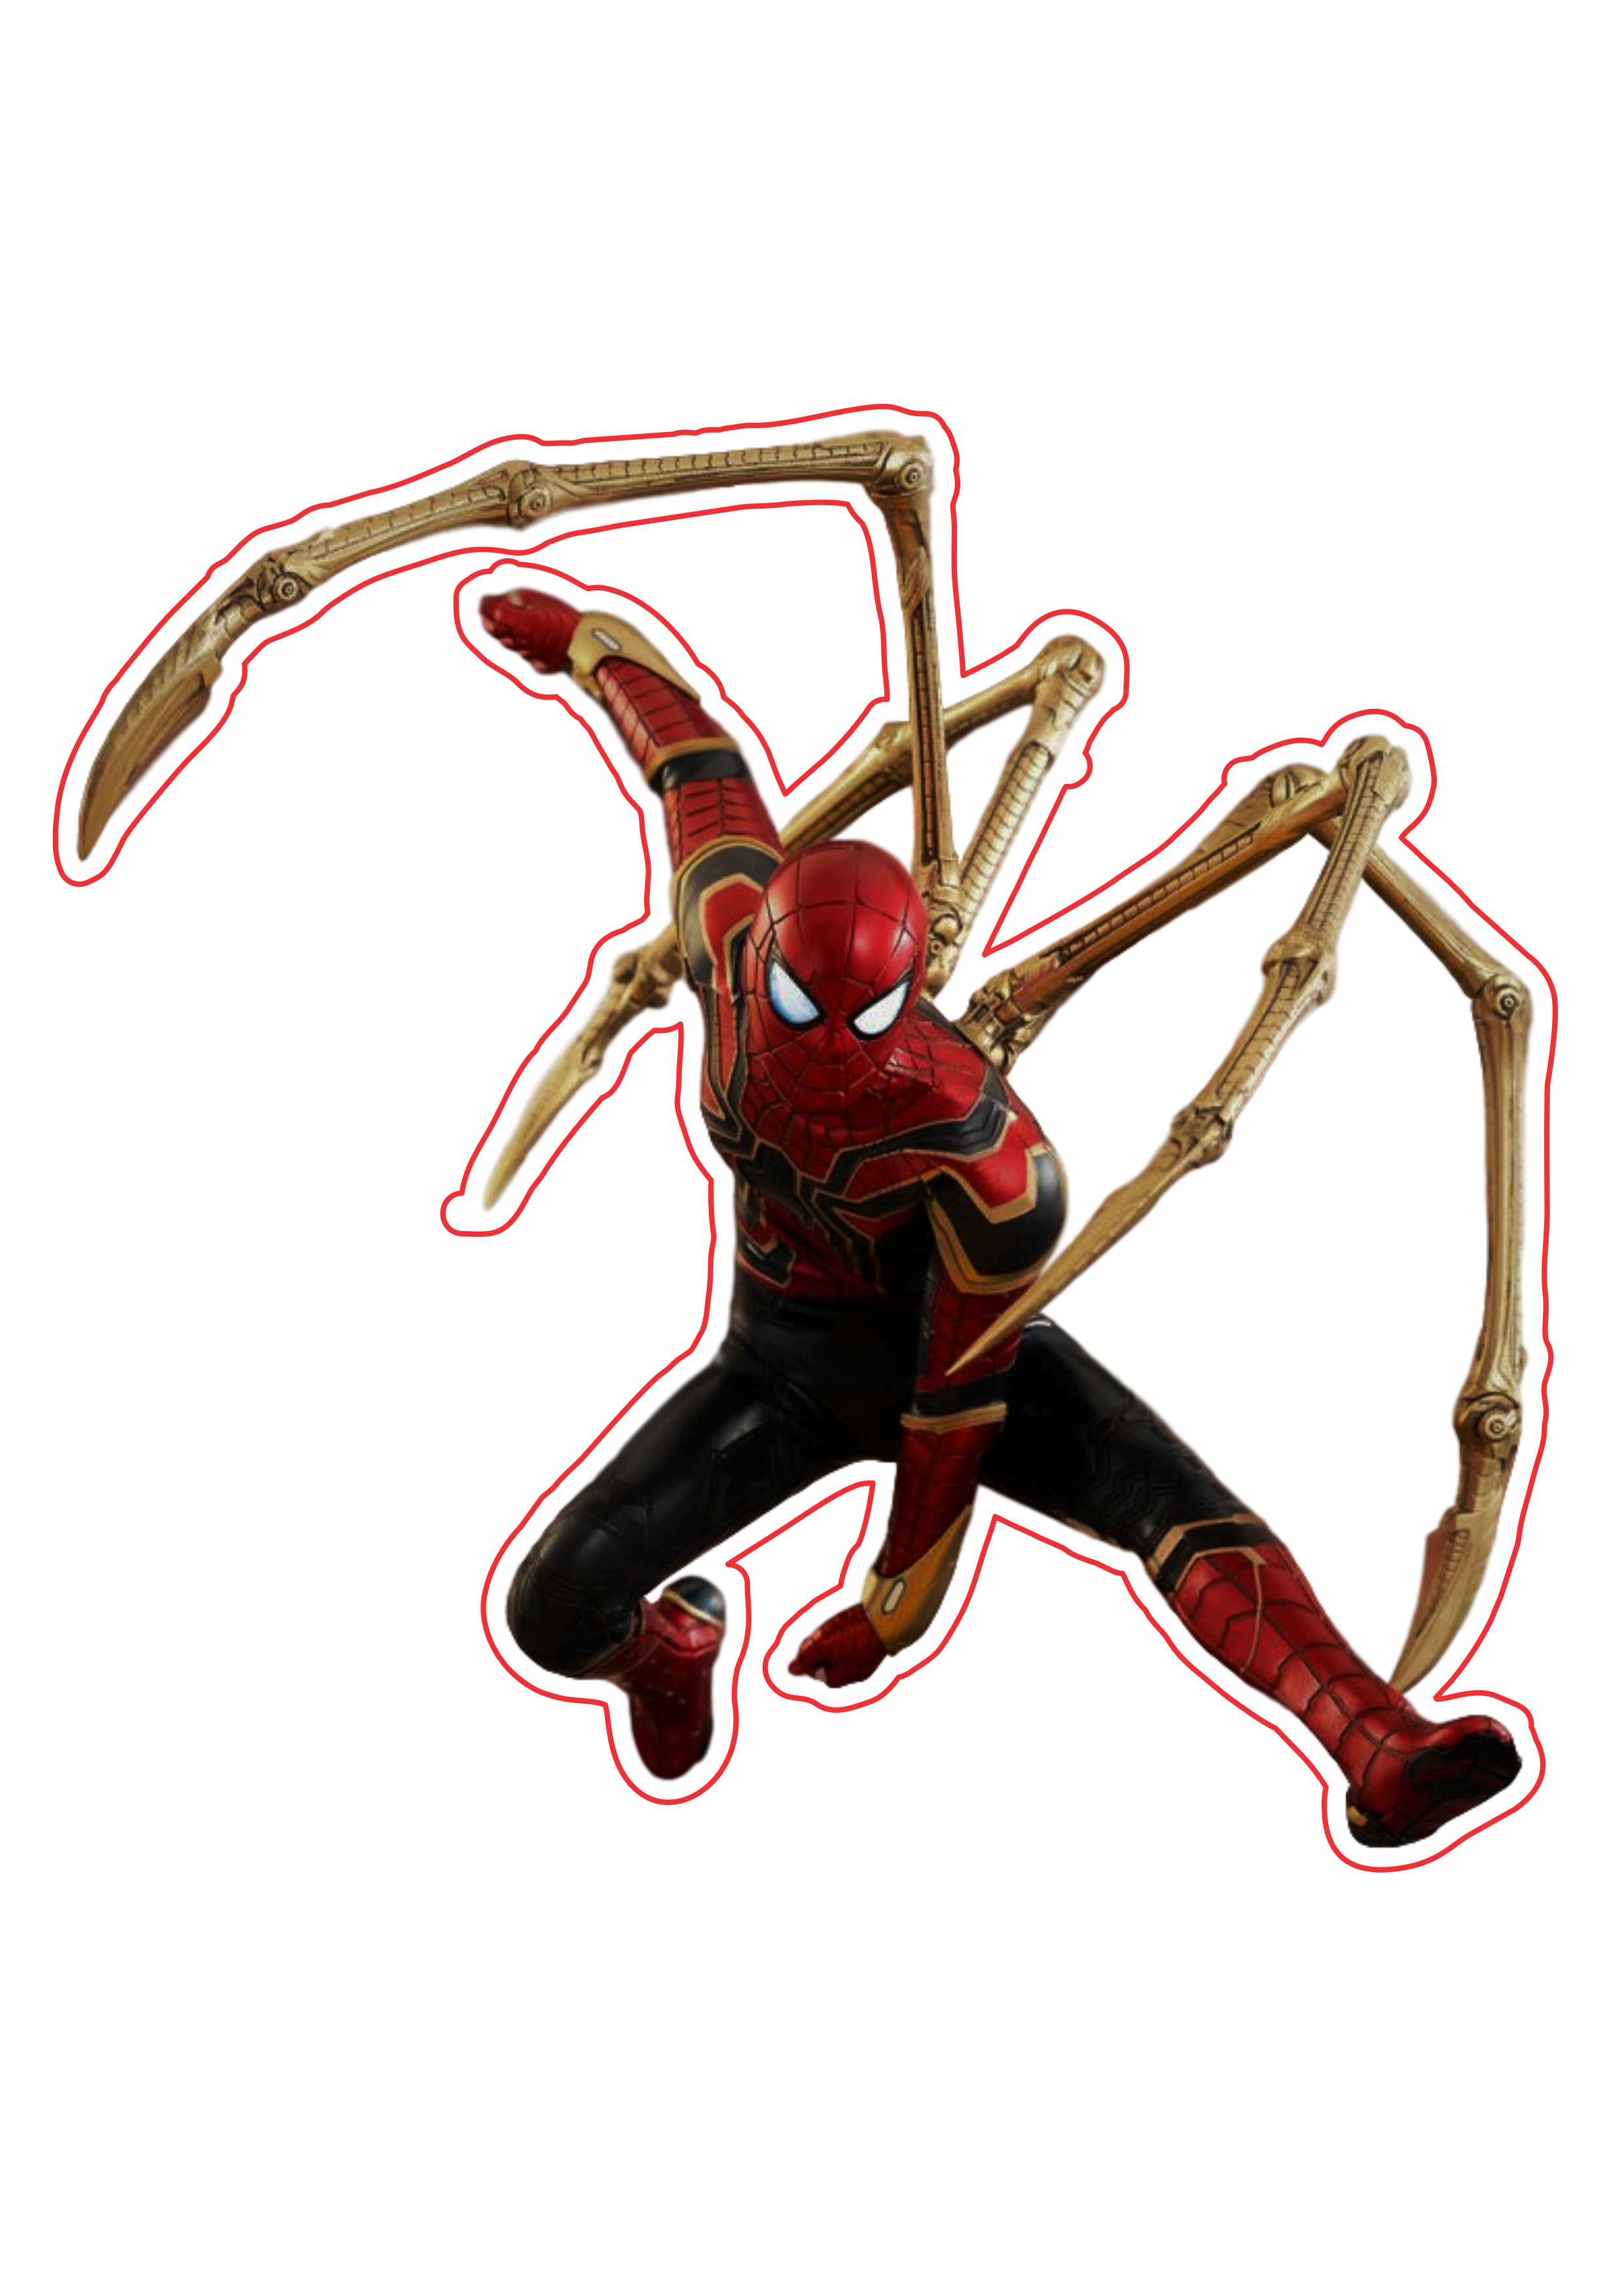 Homem aranha Vingadores guerra infinita imagem fundo transparente Marvel super heróis arte conceitual png